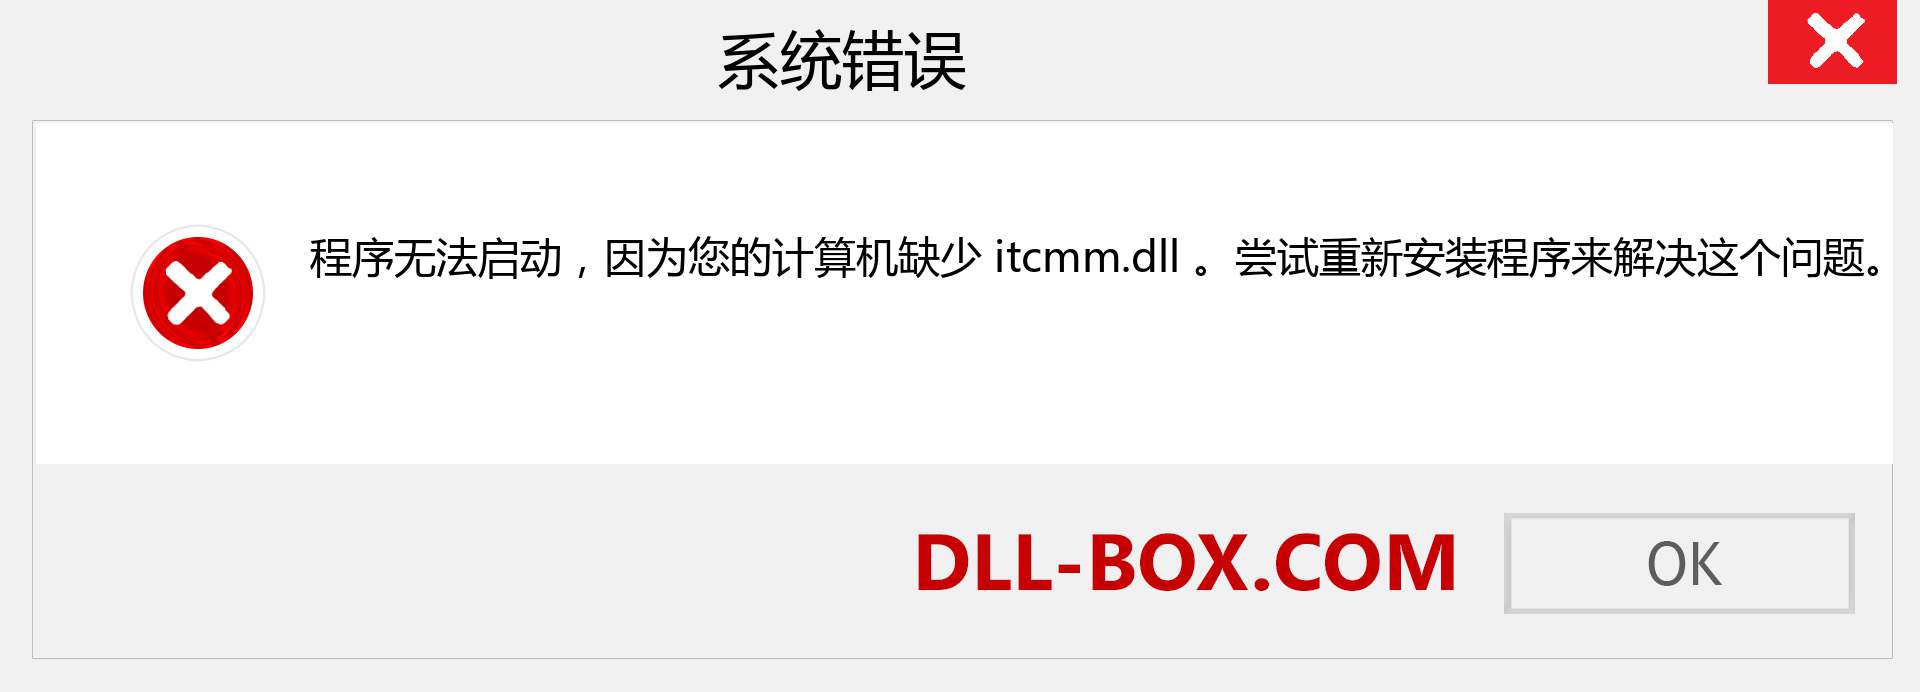 itcmm.dll 文件丢失？。 适用于 Windows 7、8、10 的下载 - 修复 Windows、照片、图像上的 itcmm dll 丢失错误